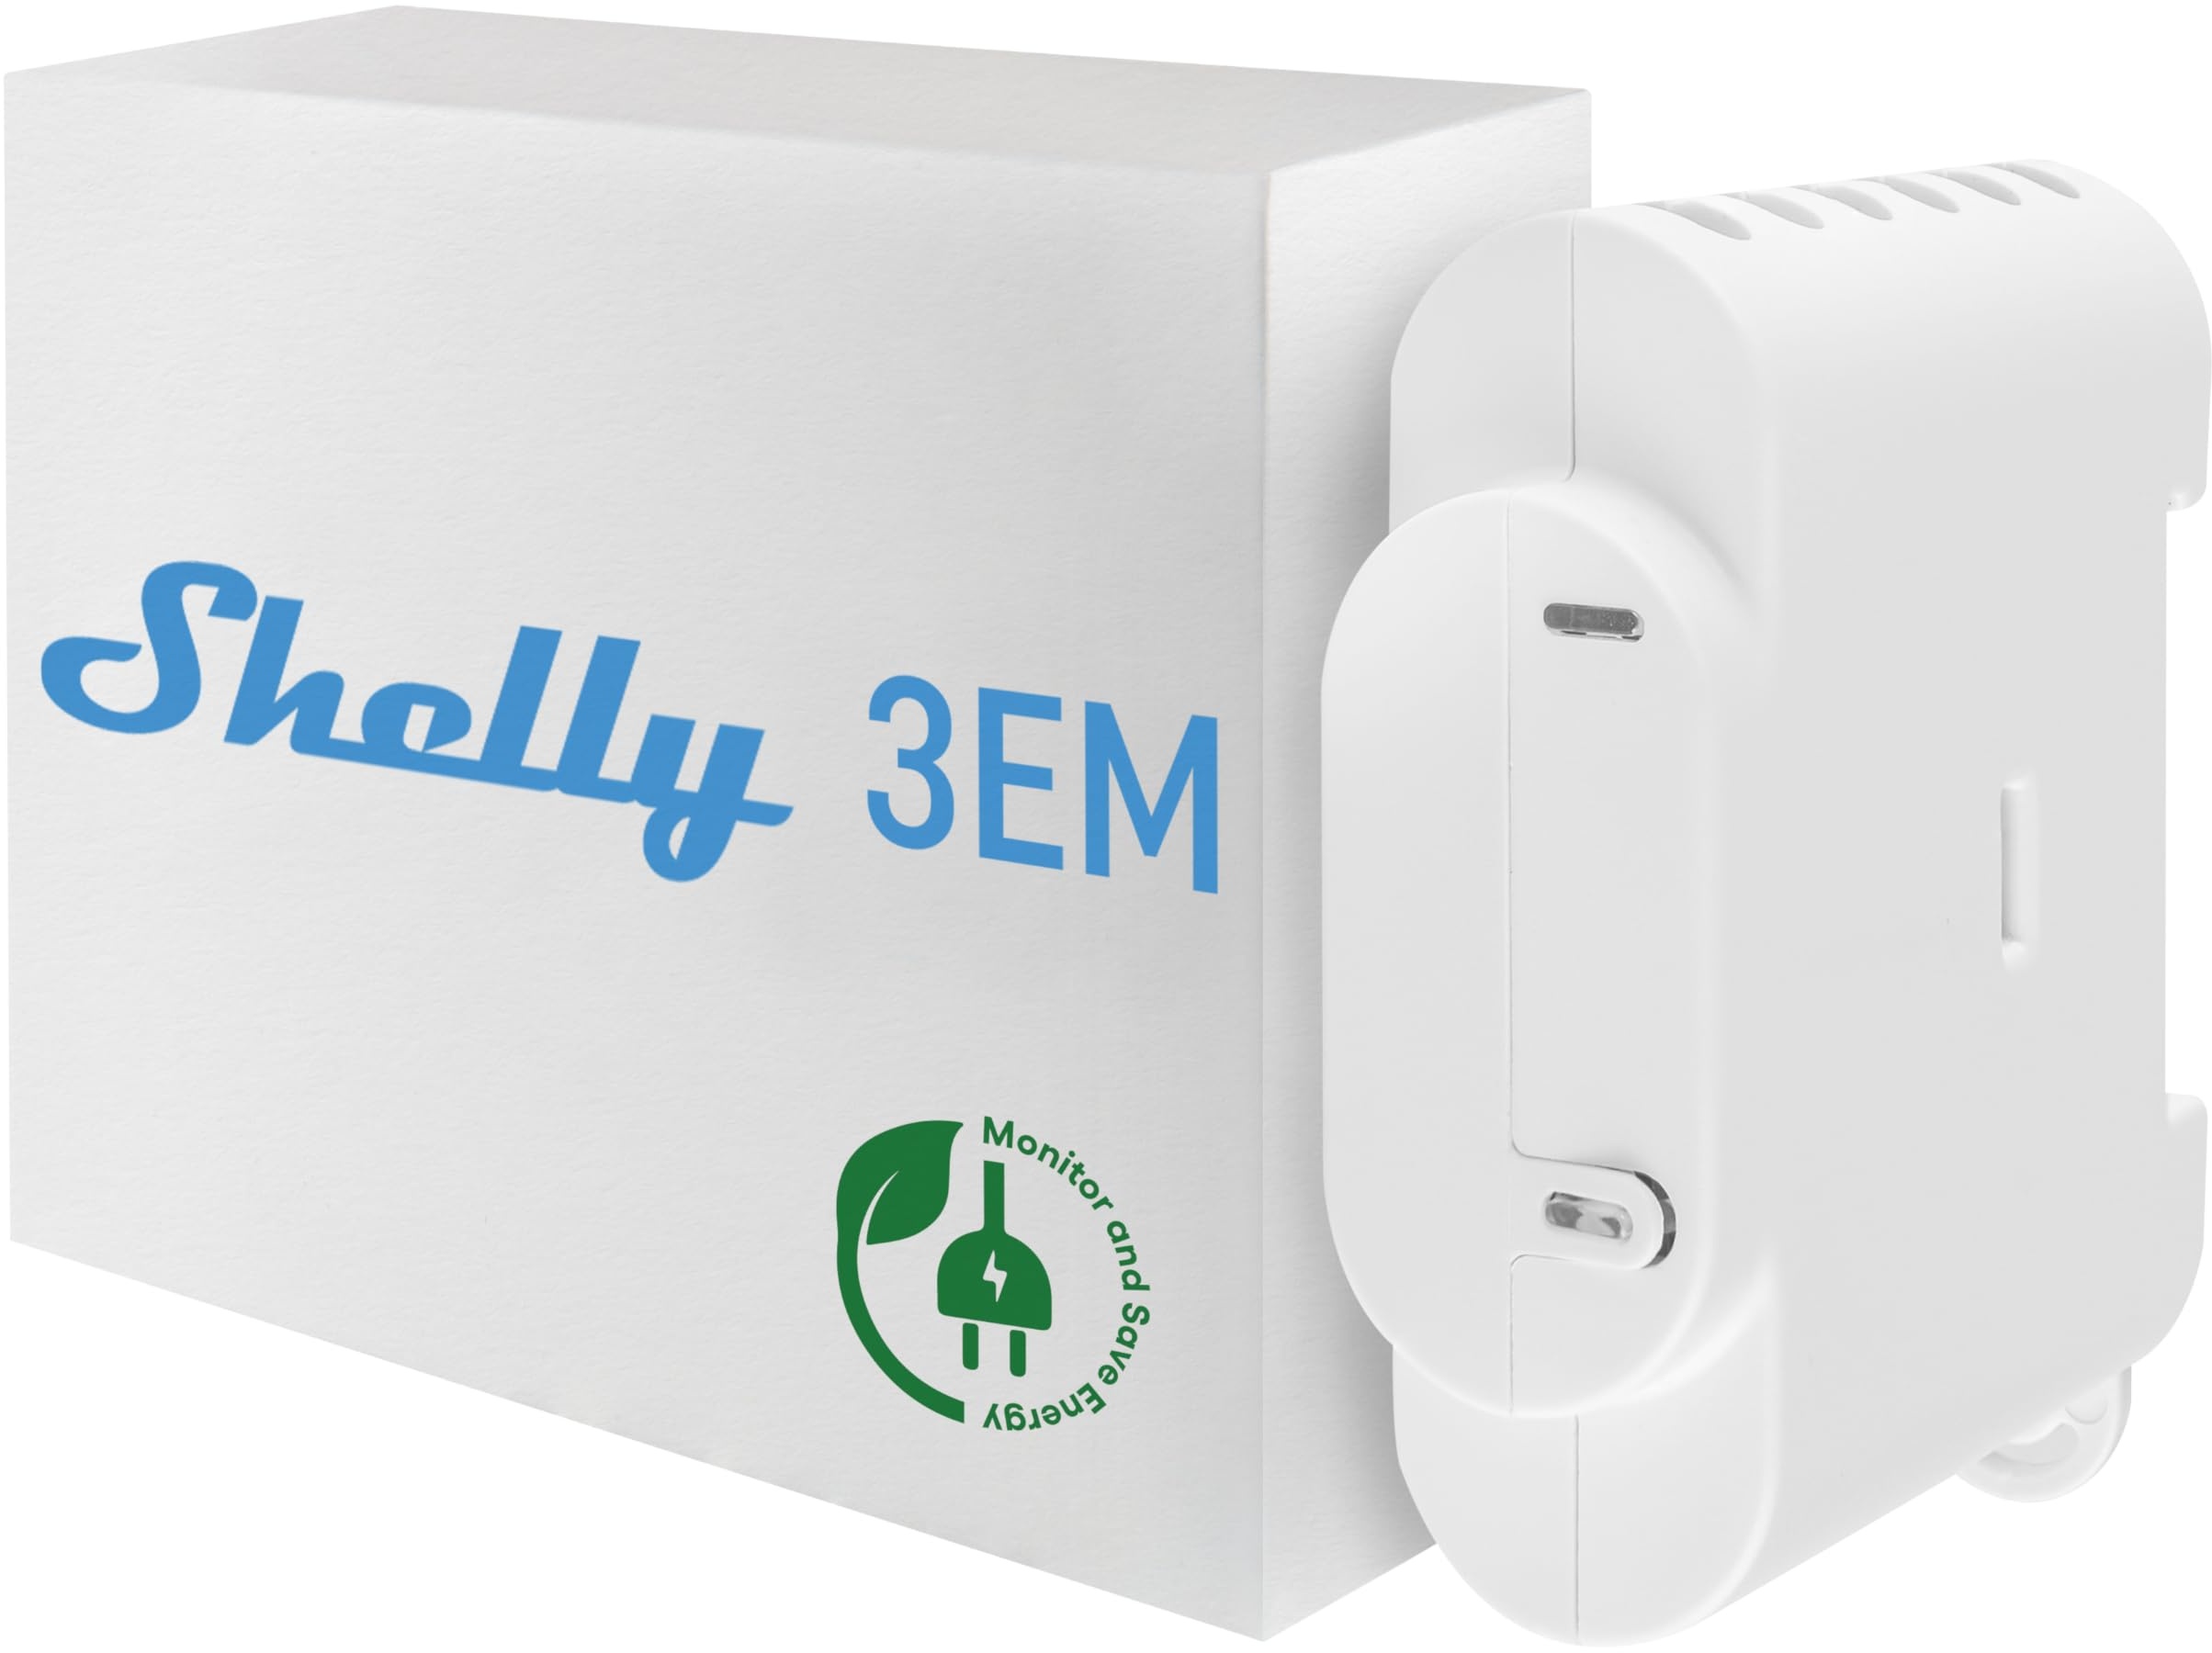 Shelly 3EM | Wlan-gesteuerter intelligenter 3 Kanal Relaisschalter mit Energiemessung und Schützsteuerung | Alexa & Google Home kompatibel | iOS Android App | Kein Hub erforderlich | Stromüberwachung